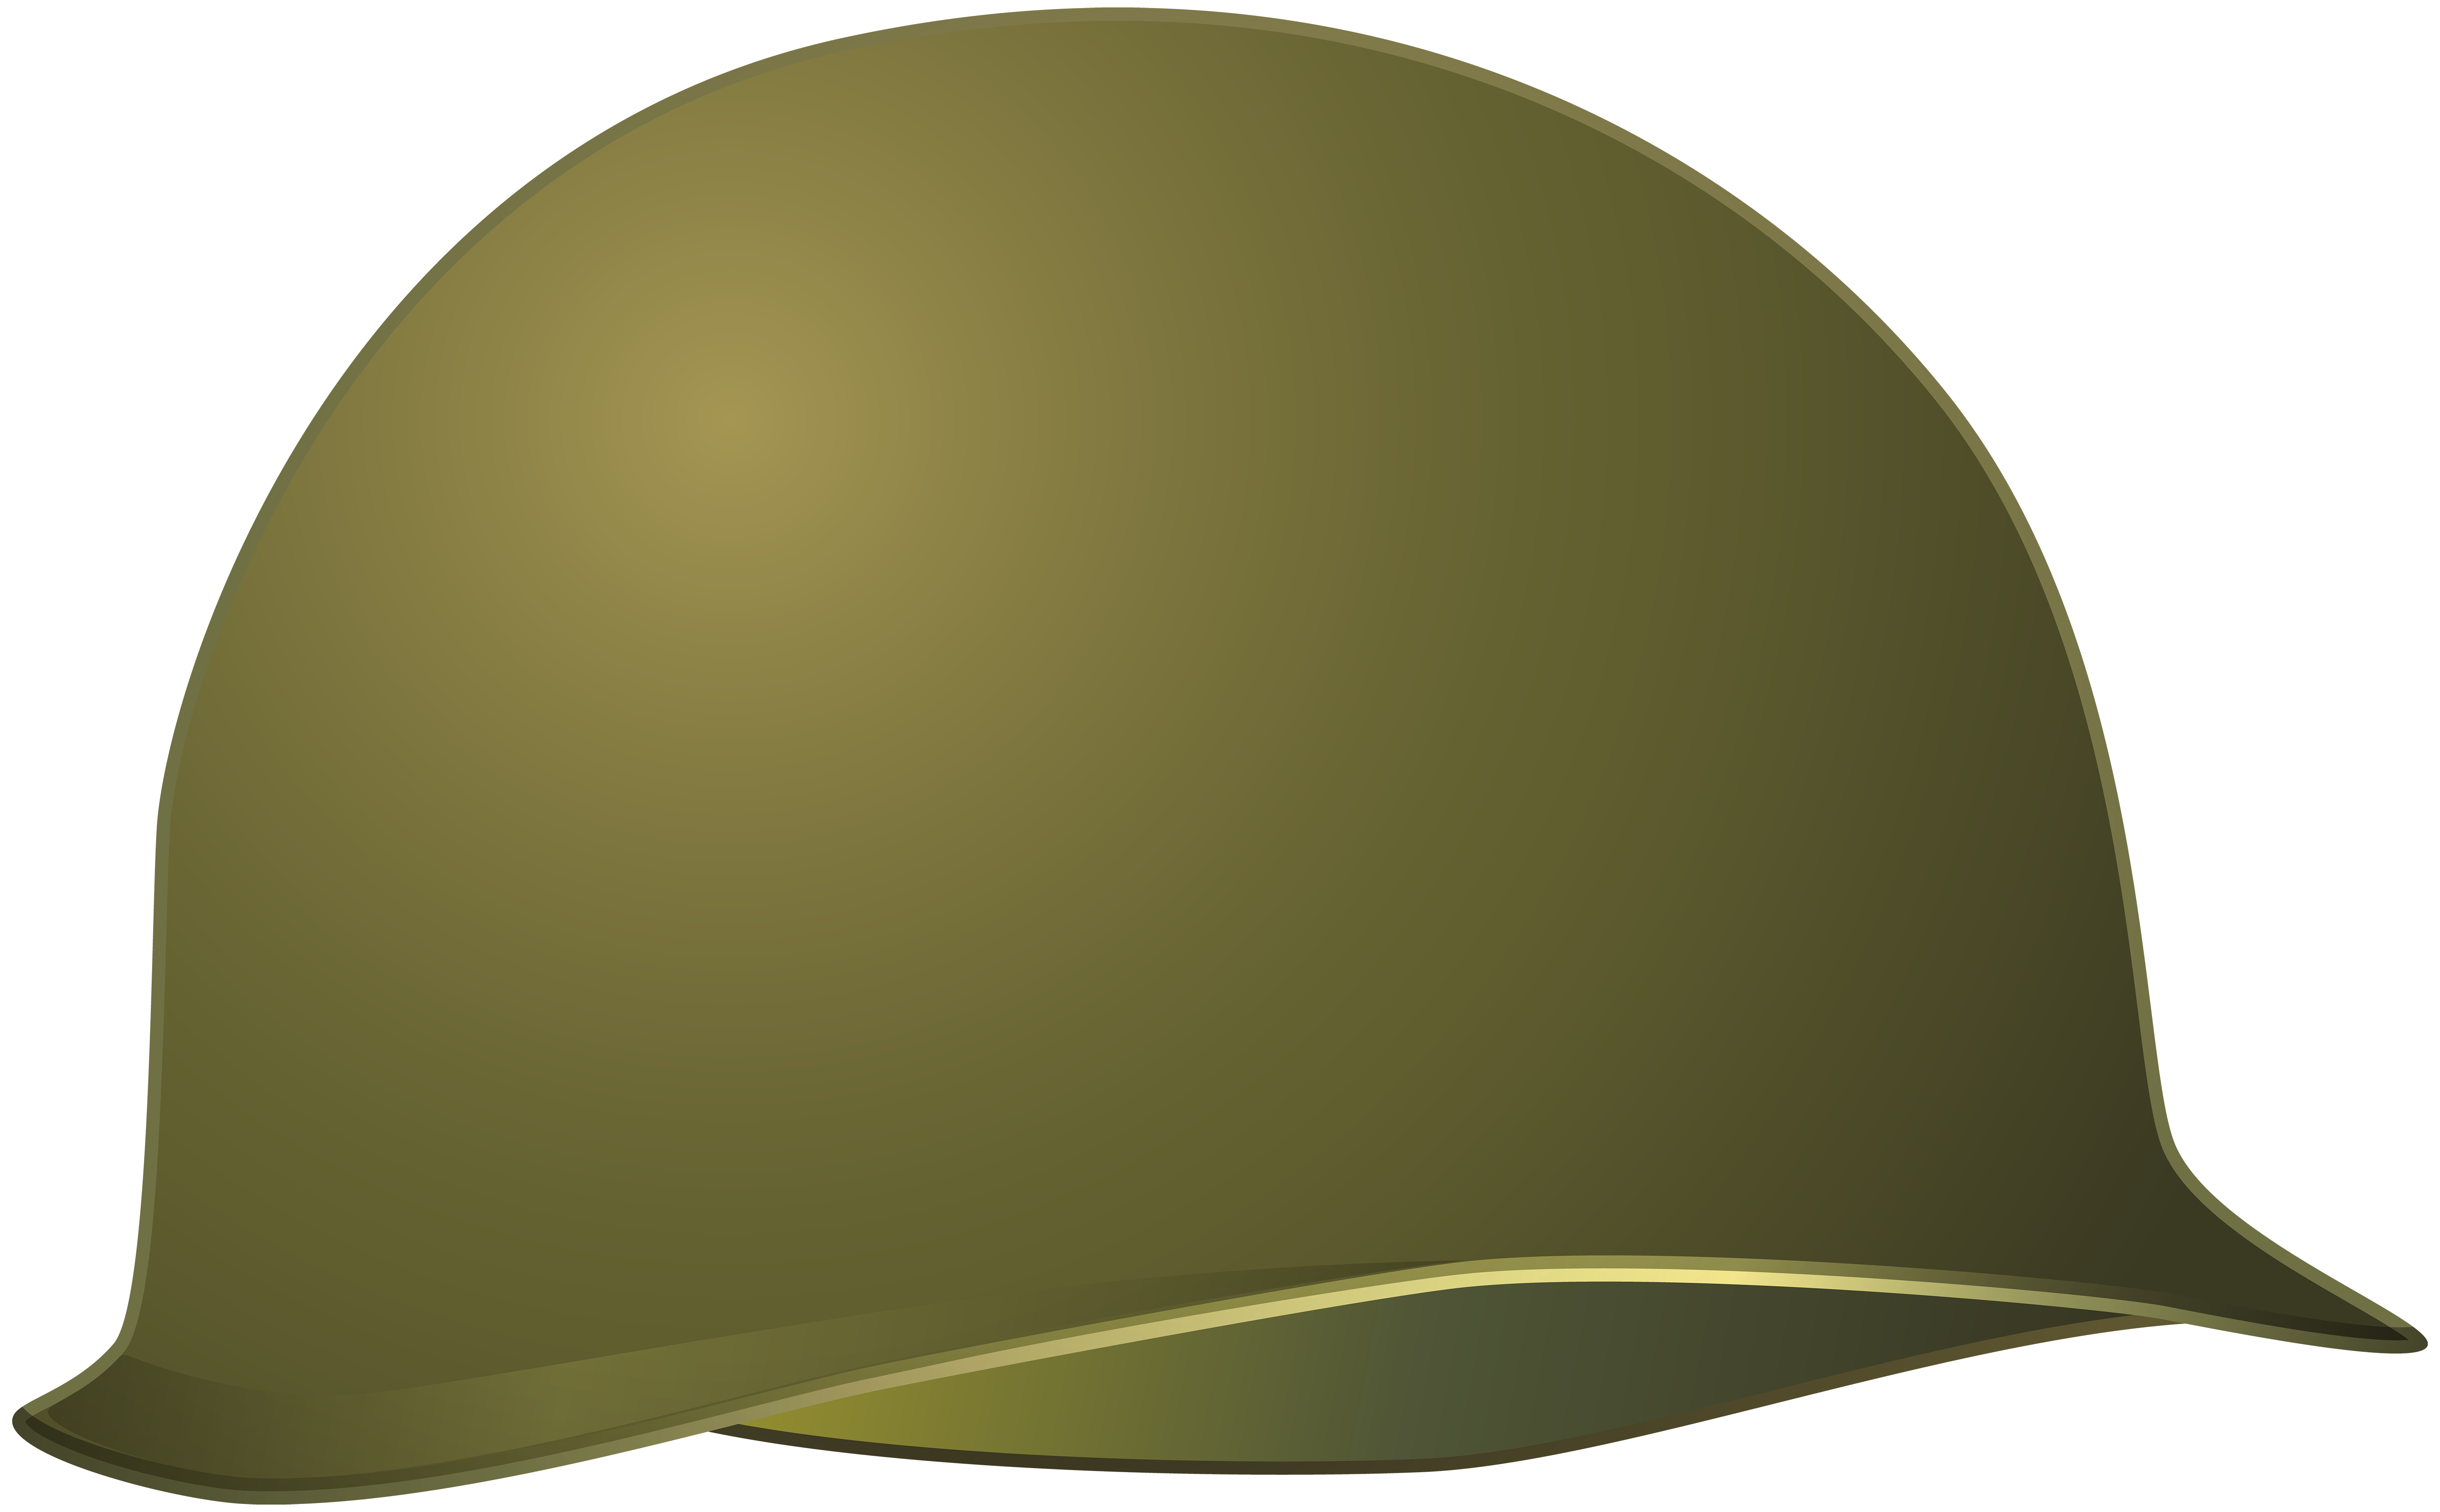 Military helmet png.